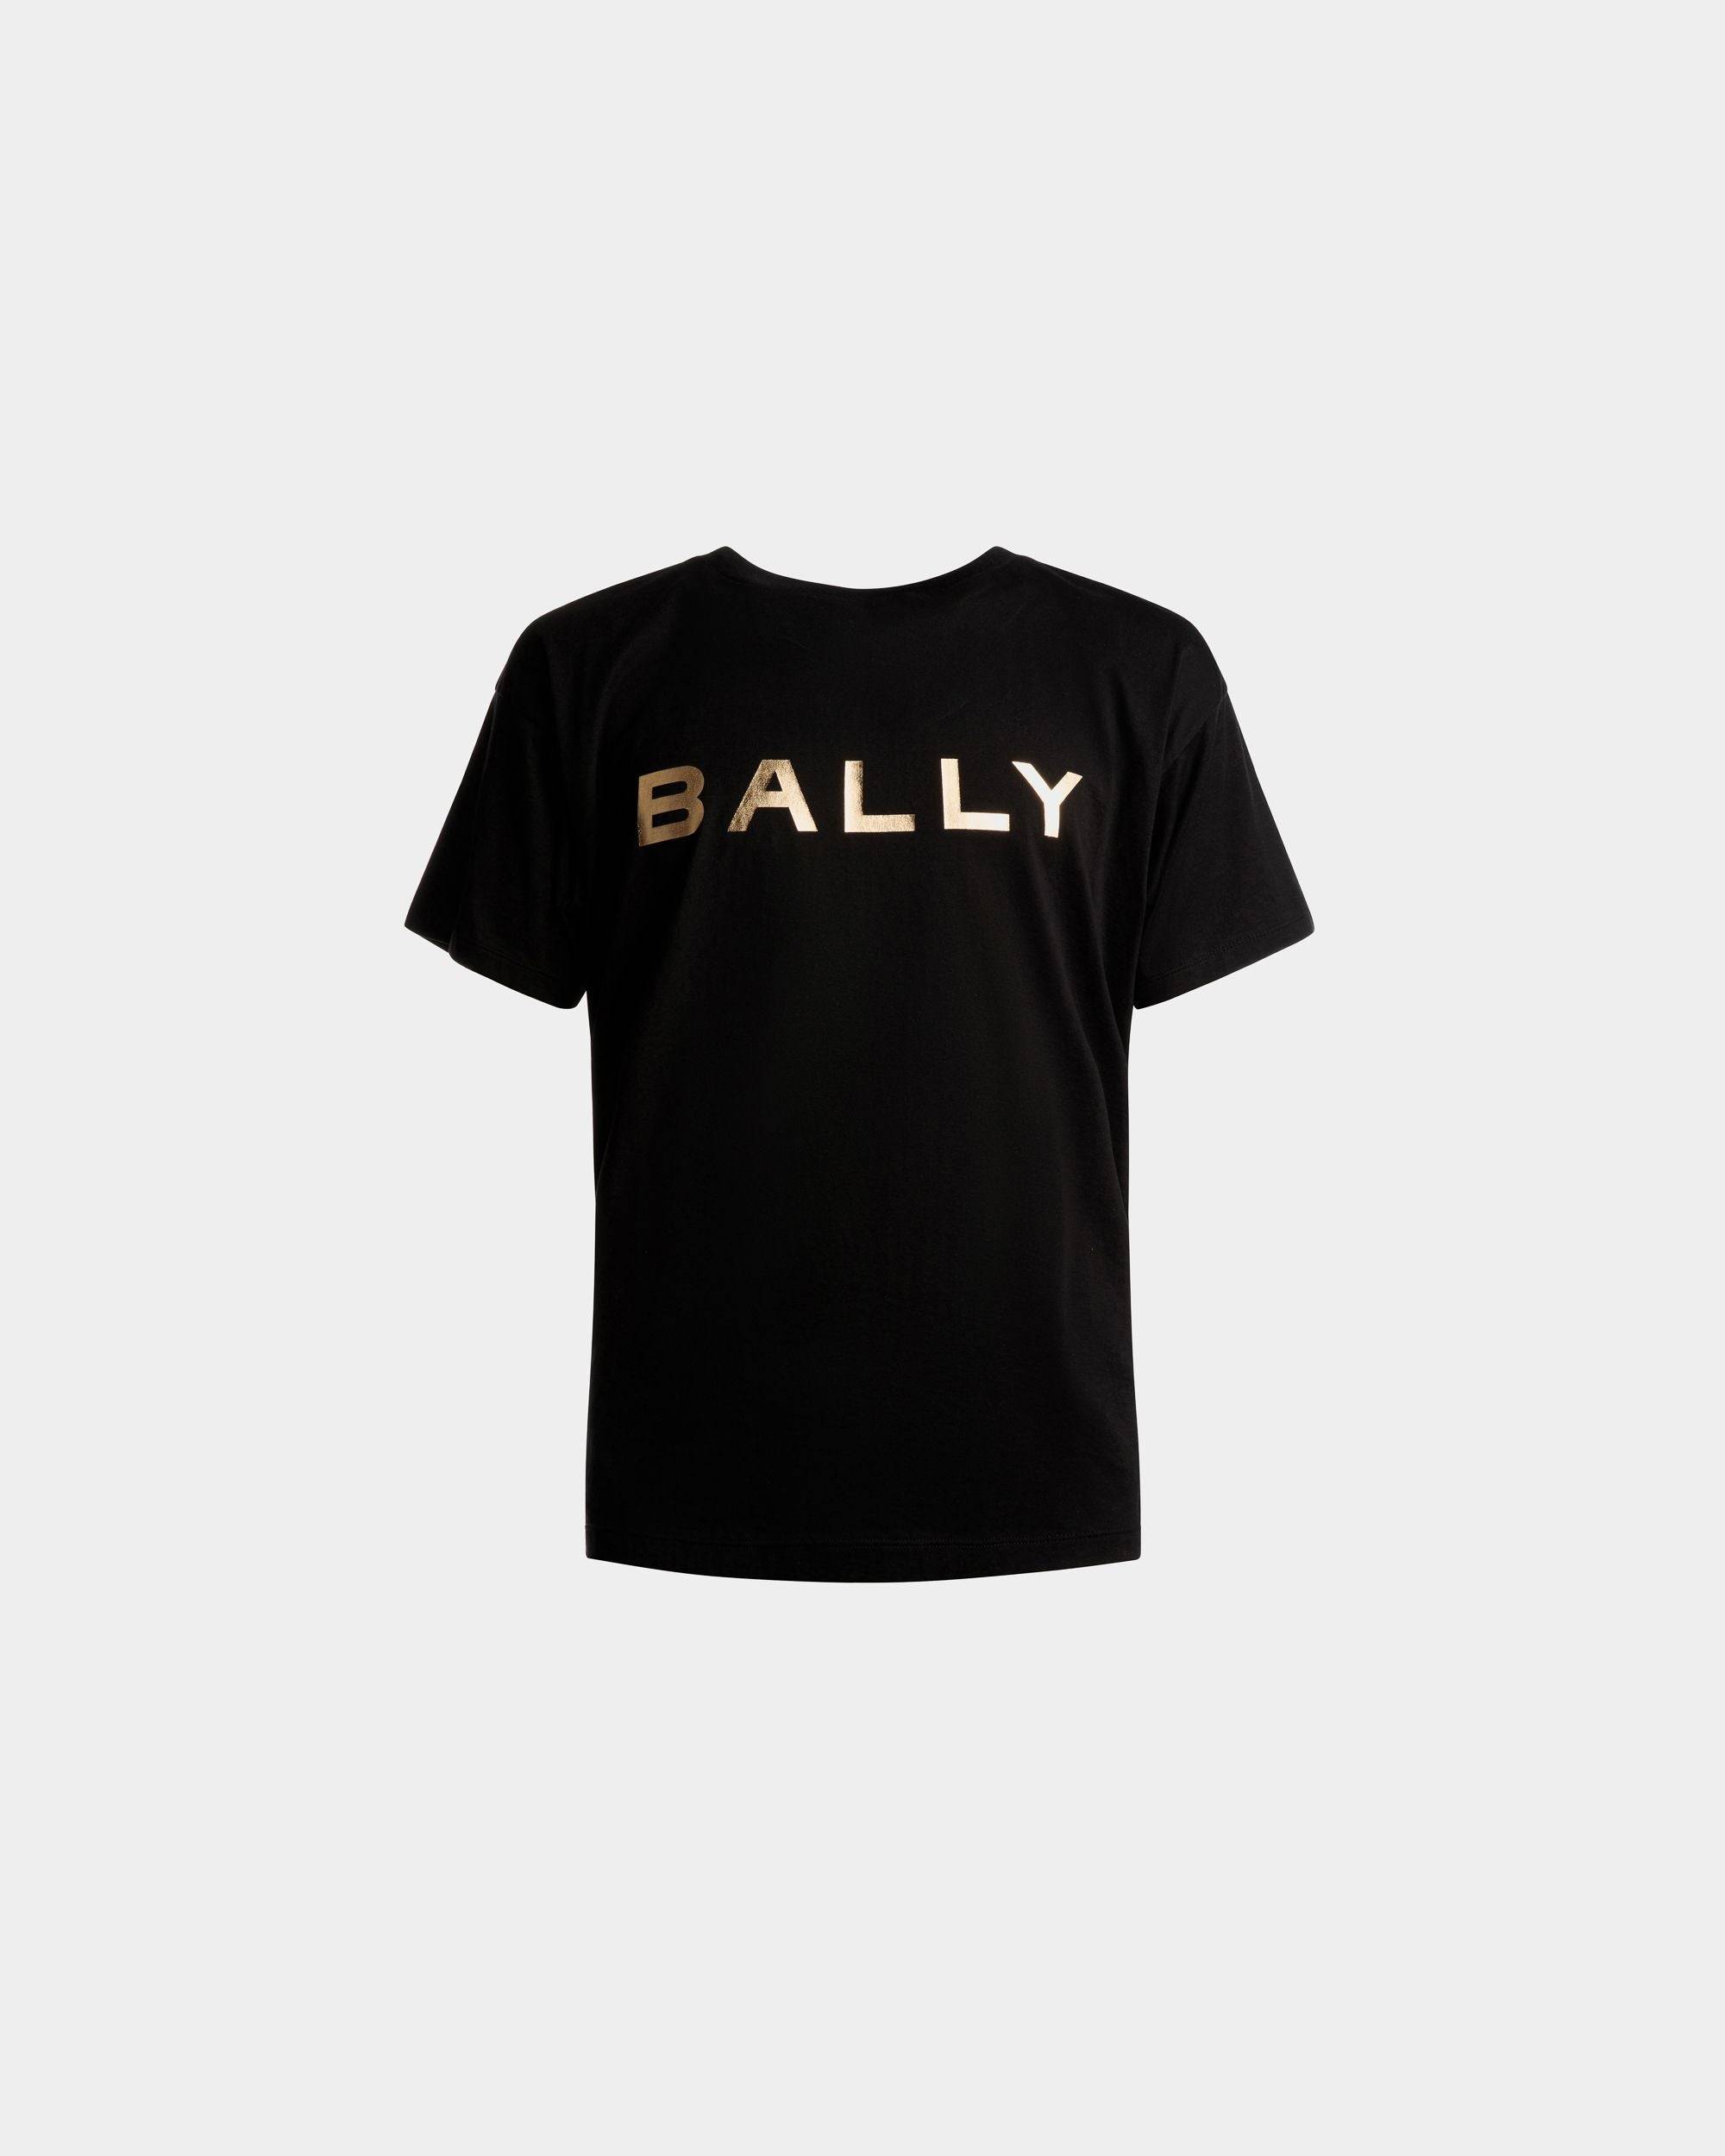 Men's Logo T-Shirt In Black Cotton | Bally | Still Life Front